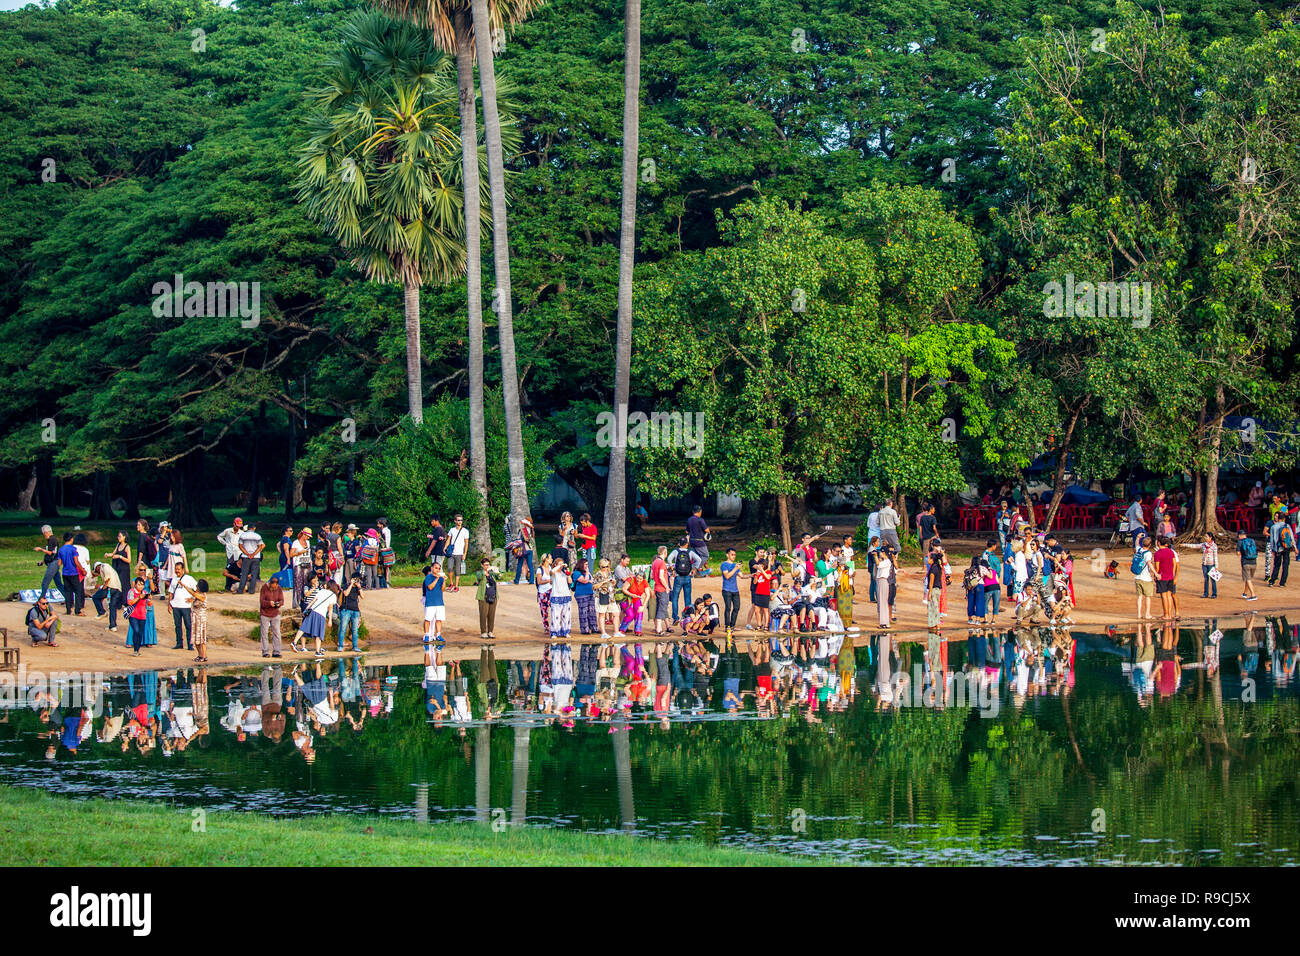 Touristen beobachten Sonnenaufgang über einem Teich mit grünen Bäumen im Hintergrund bei Tempelanlage Angkor Wat, Siem Reap, Kambodscha. Stockfoto